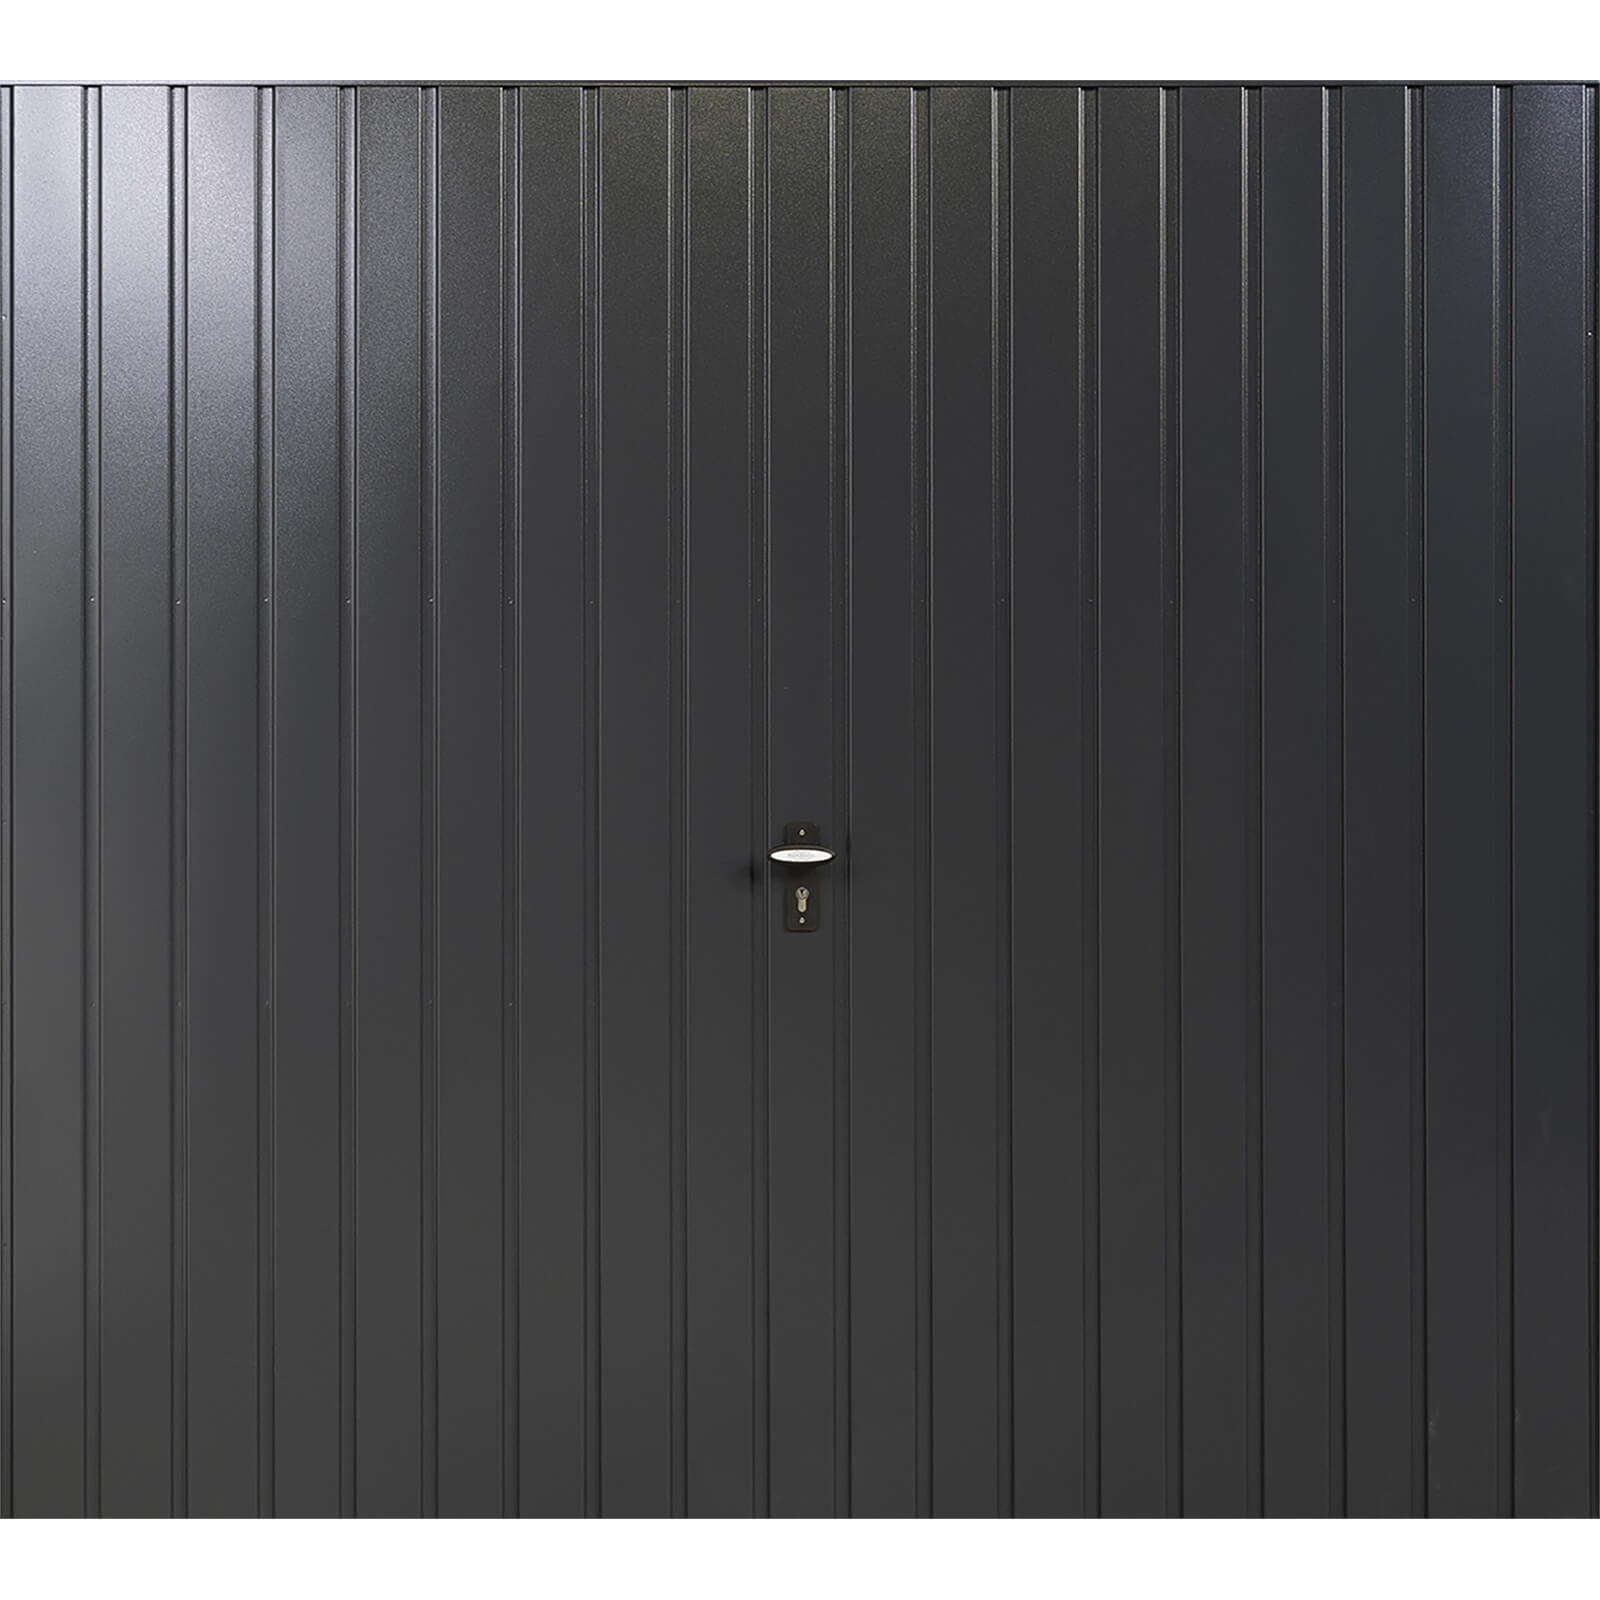 Vertical 7' x 6' 6 Frameless Steel Garage Door Anthracite Grey